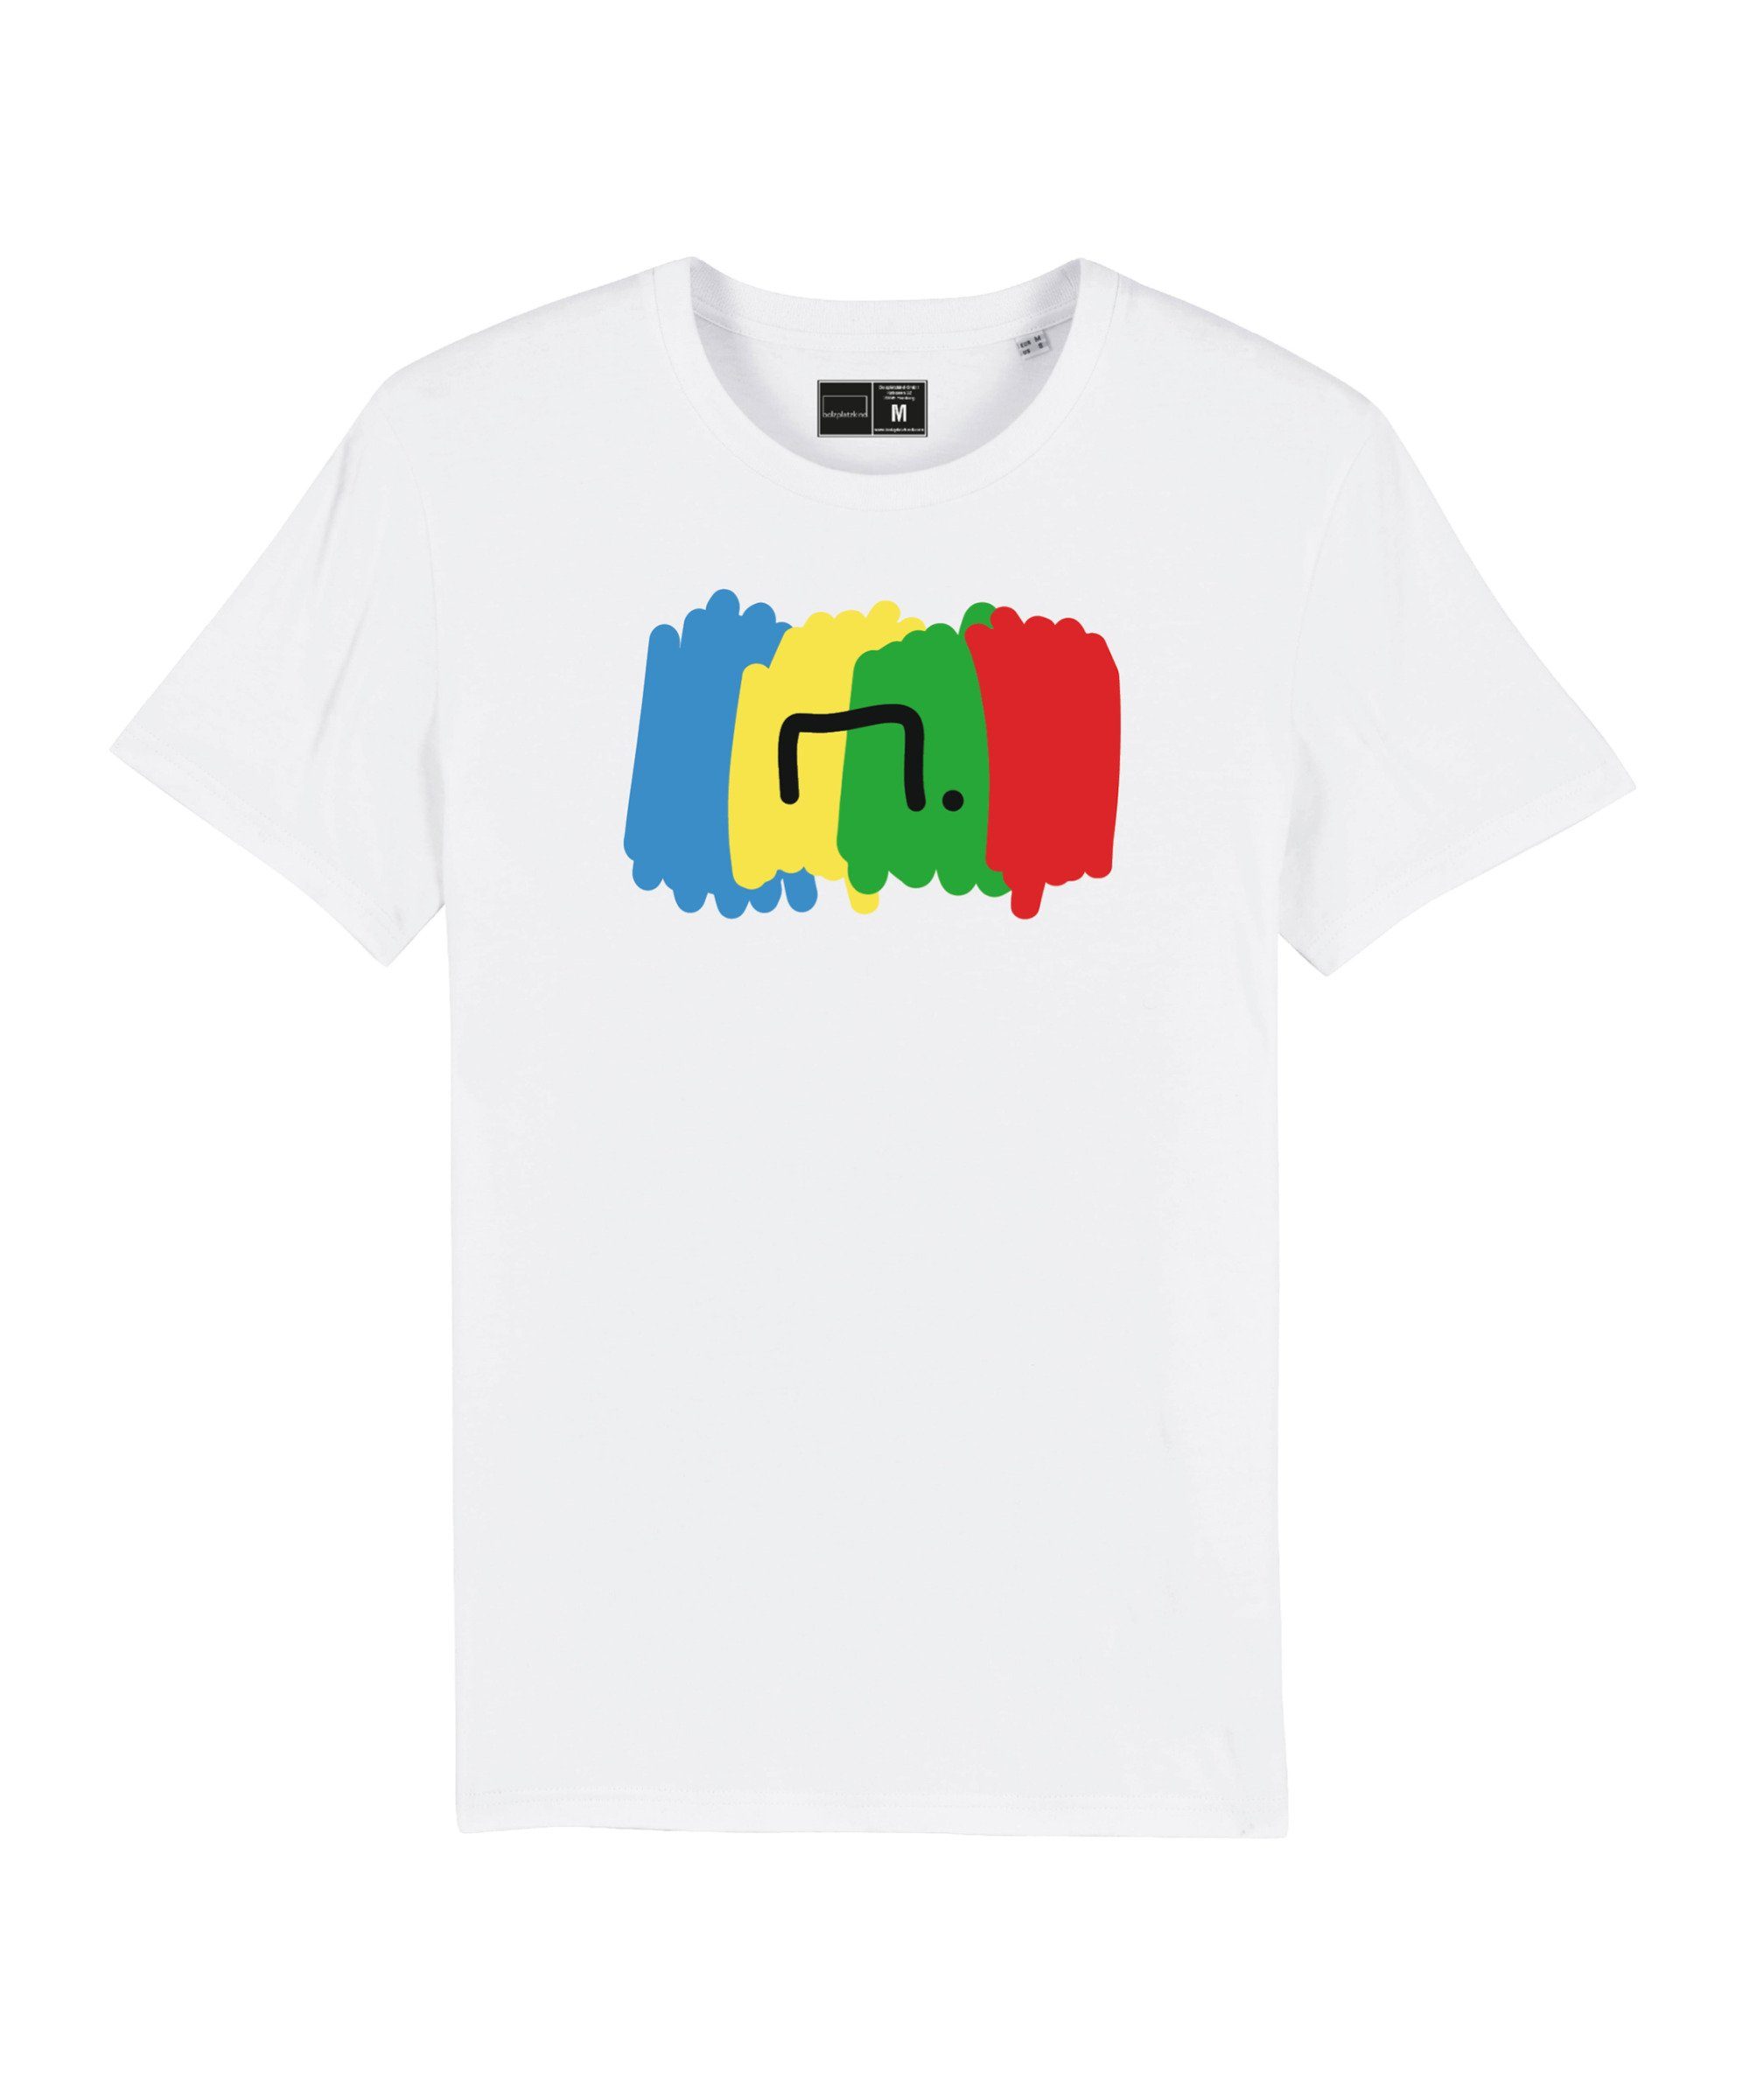 Bolzplatzkind T-Shirt "Free" T-Shirt Nachhaltiges Produkt weiss